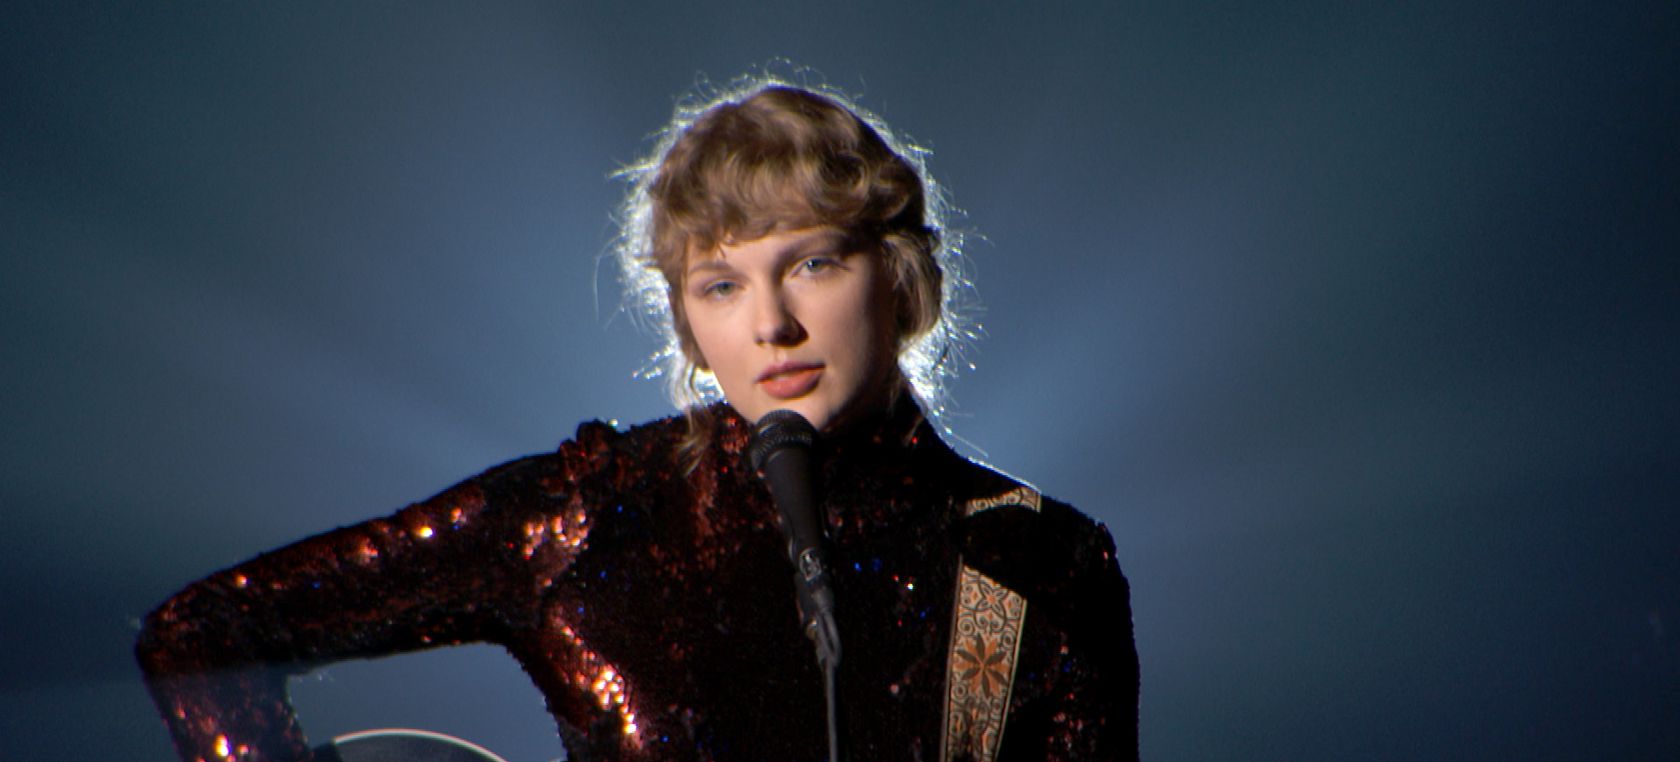 Taylor Swift vuelve a actuar en los premios que le vieron crecer siete años después